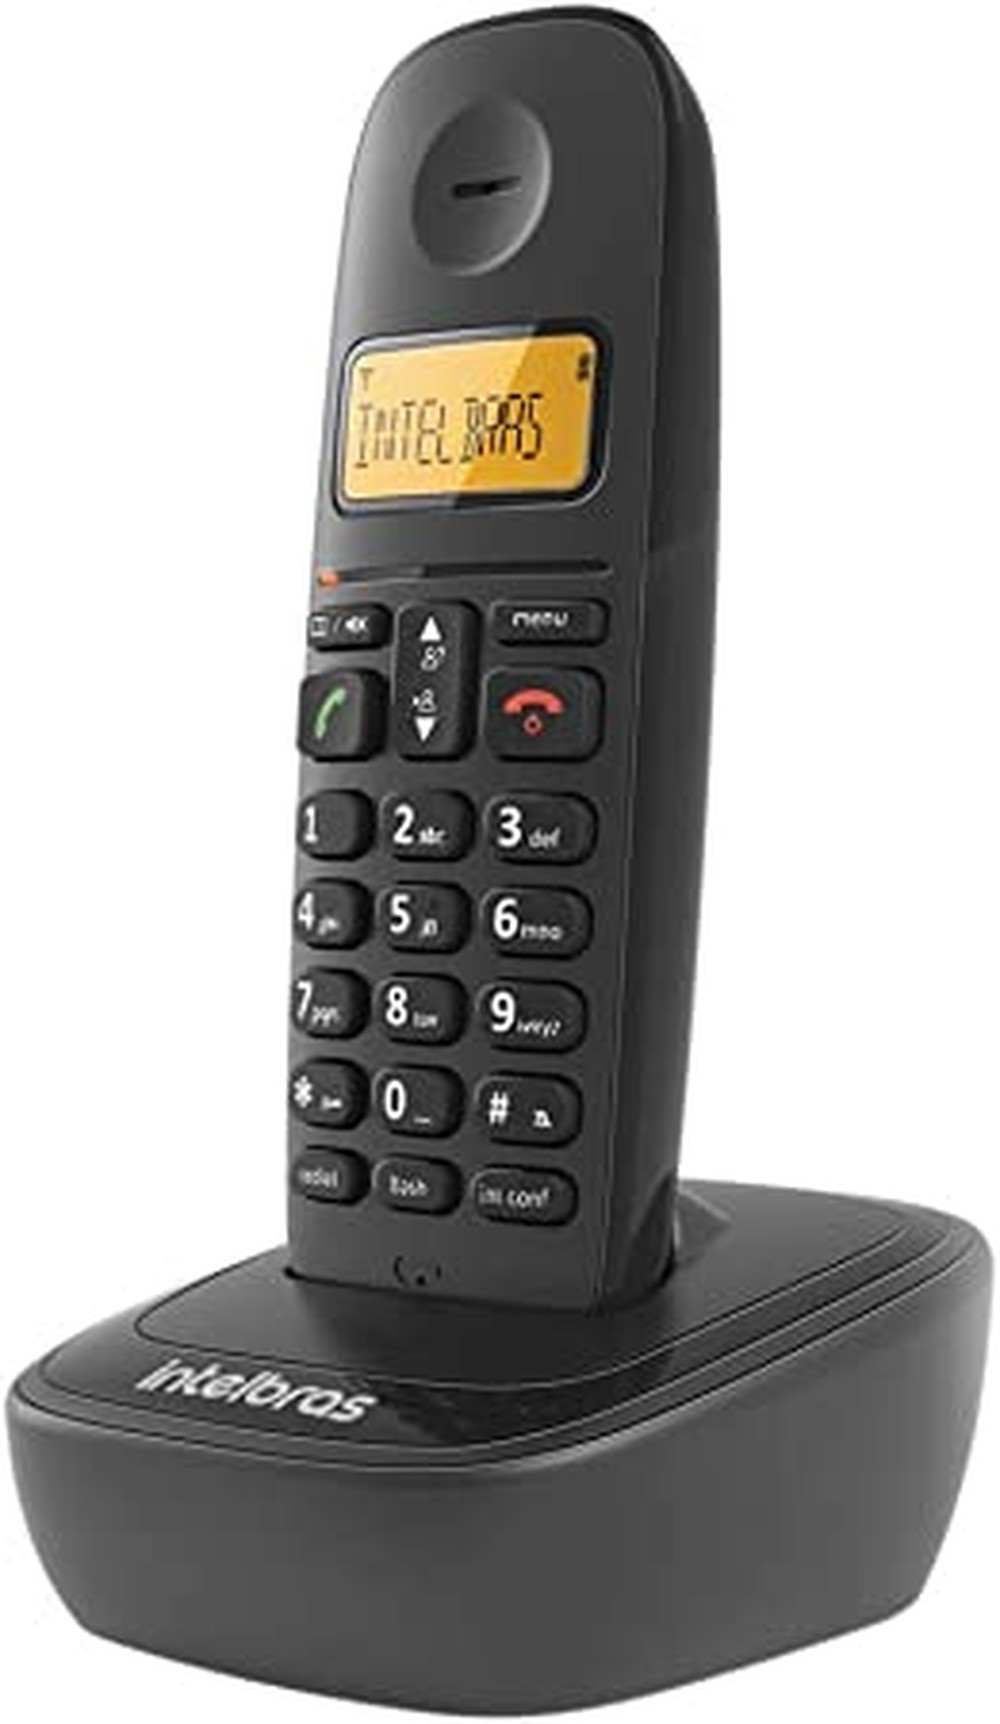 Telefone Sem Fio Digital Intelbras TS 2510, Identificador de Chamadas, Preto